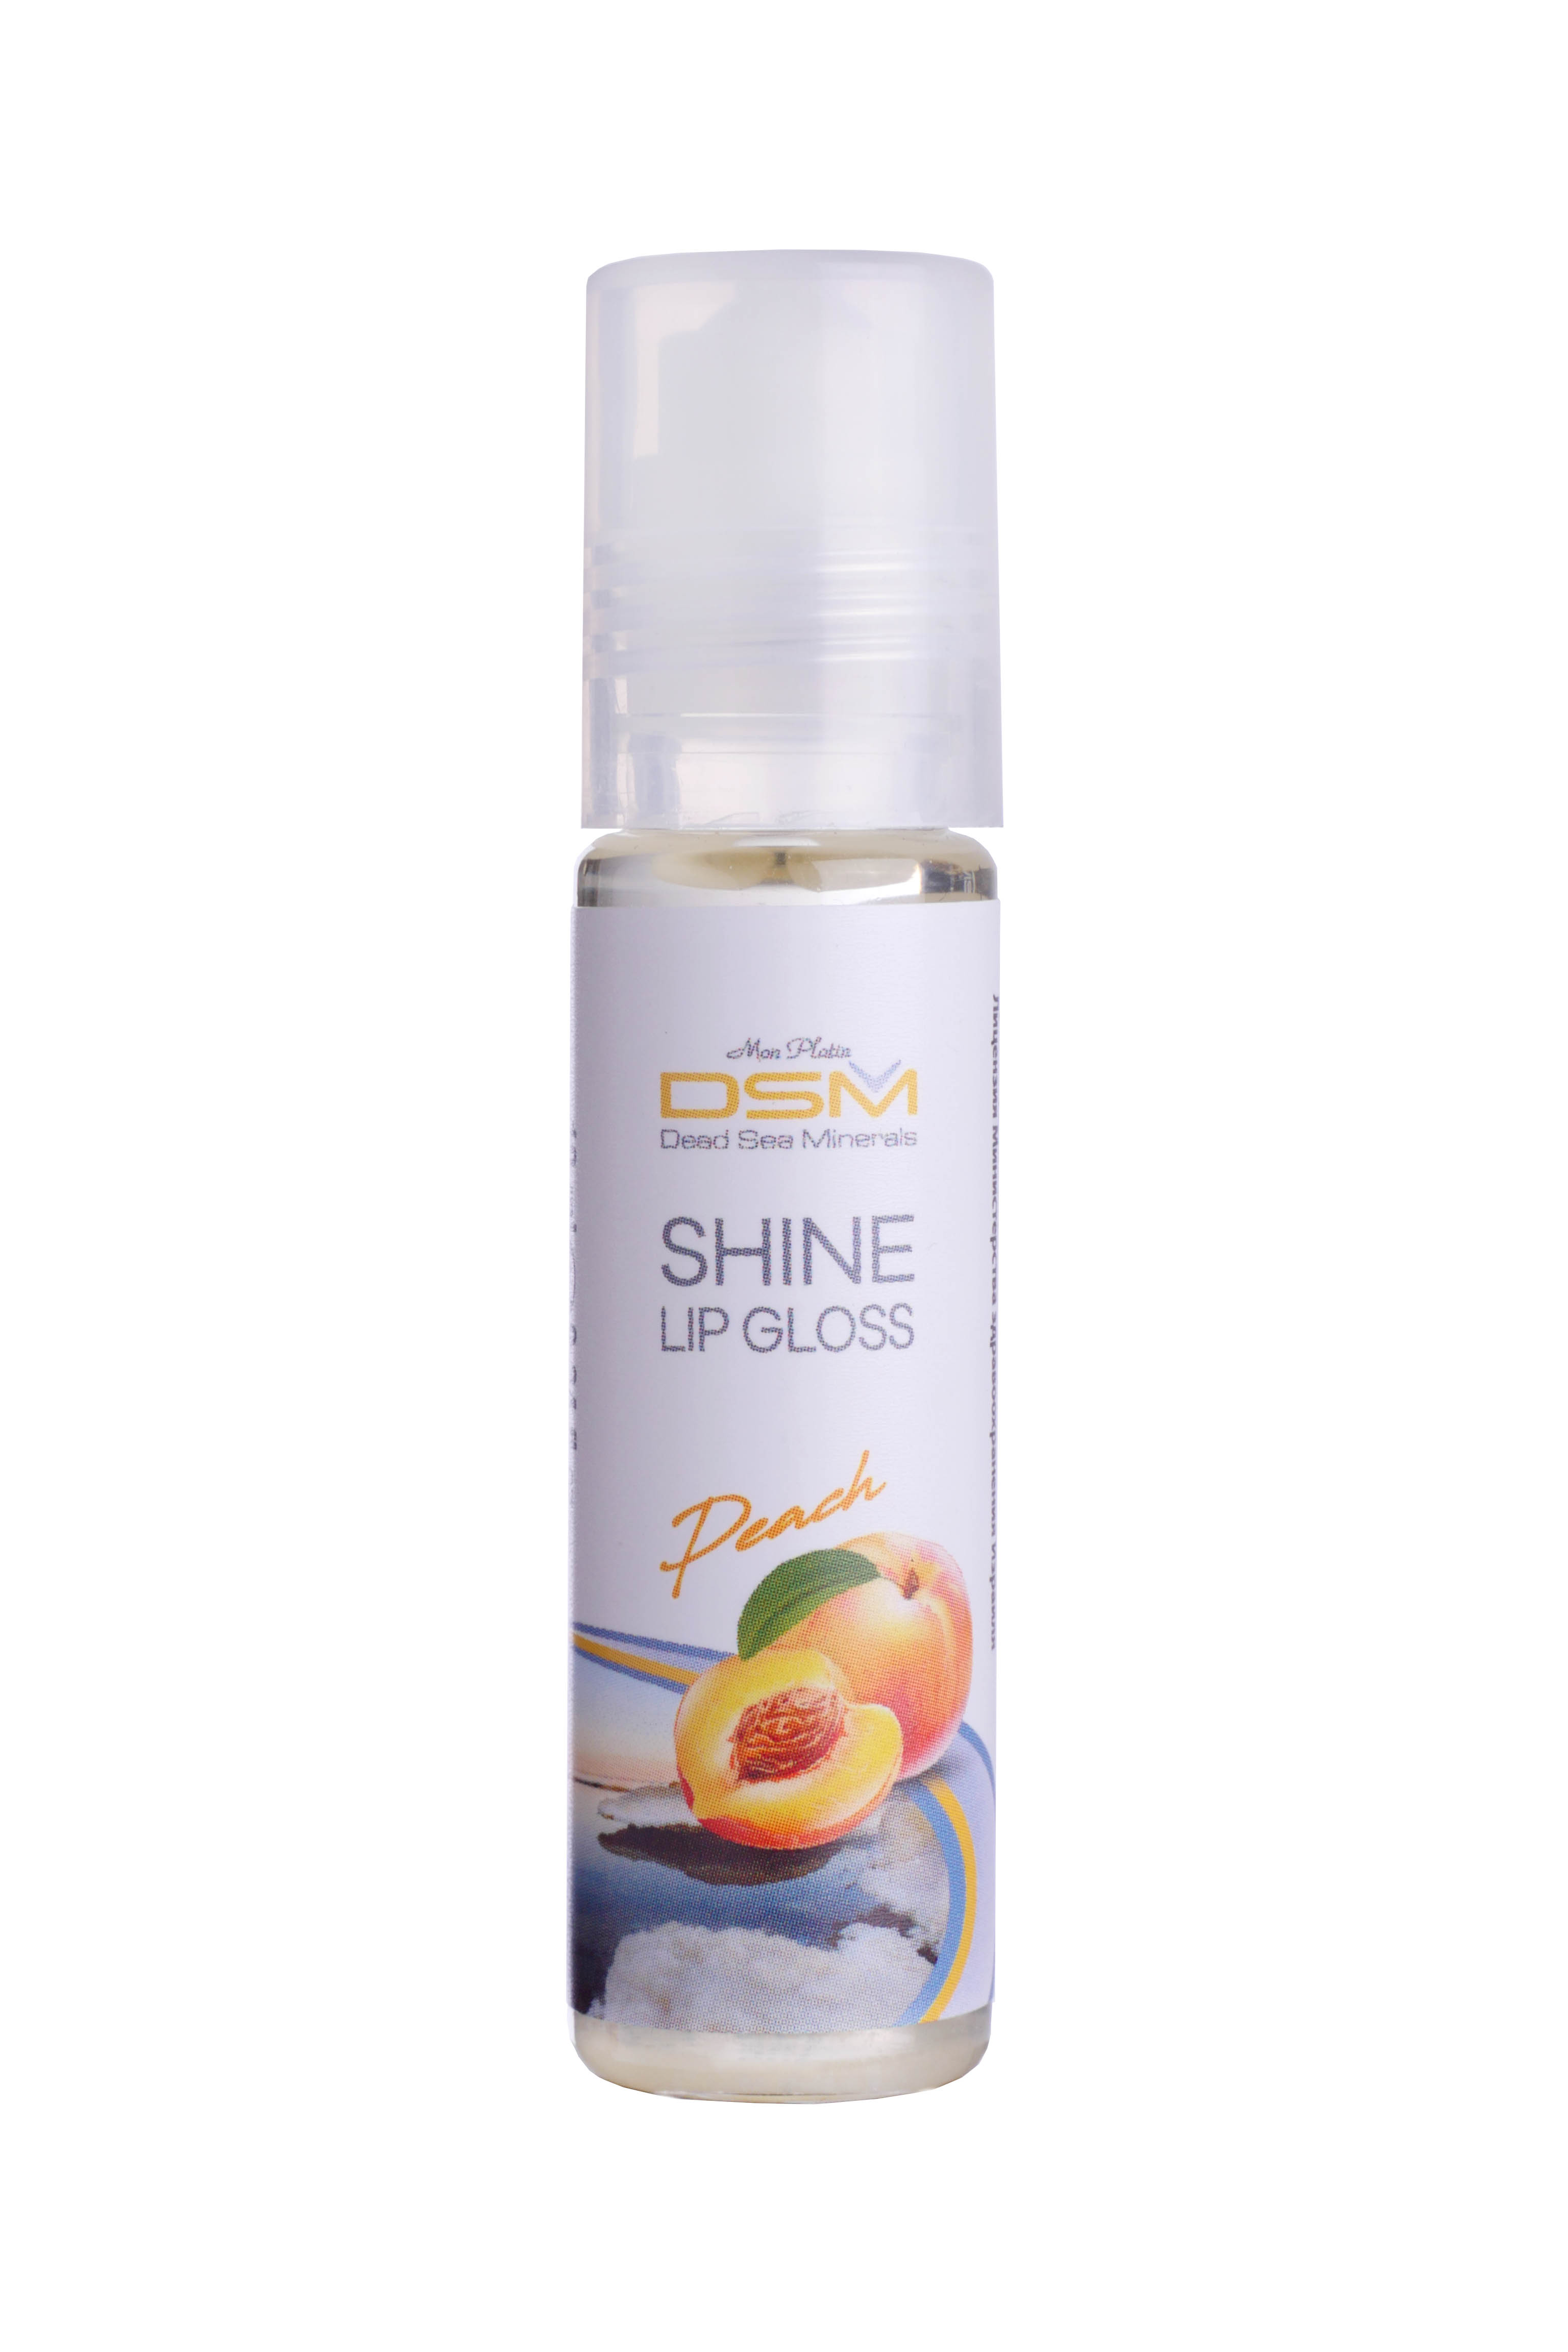 Shine Lip Gloss - peach flavor